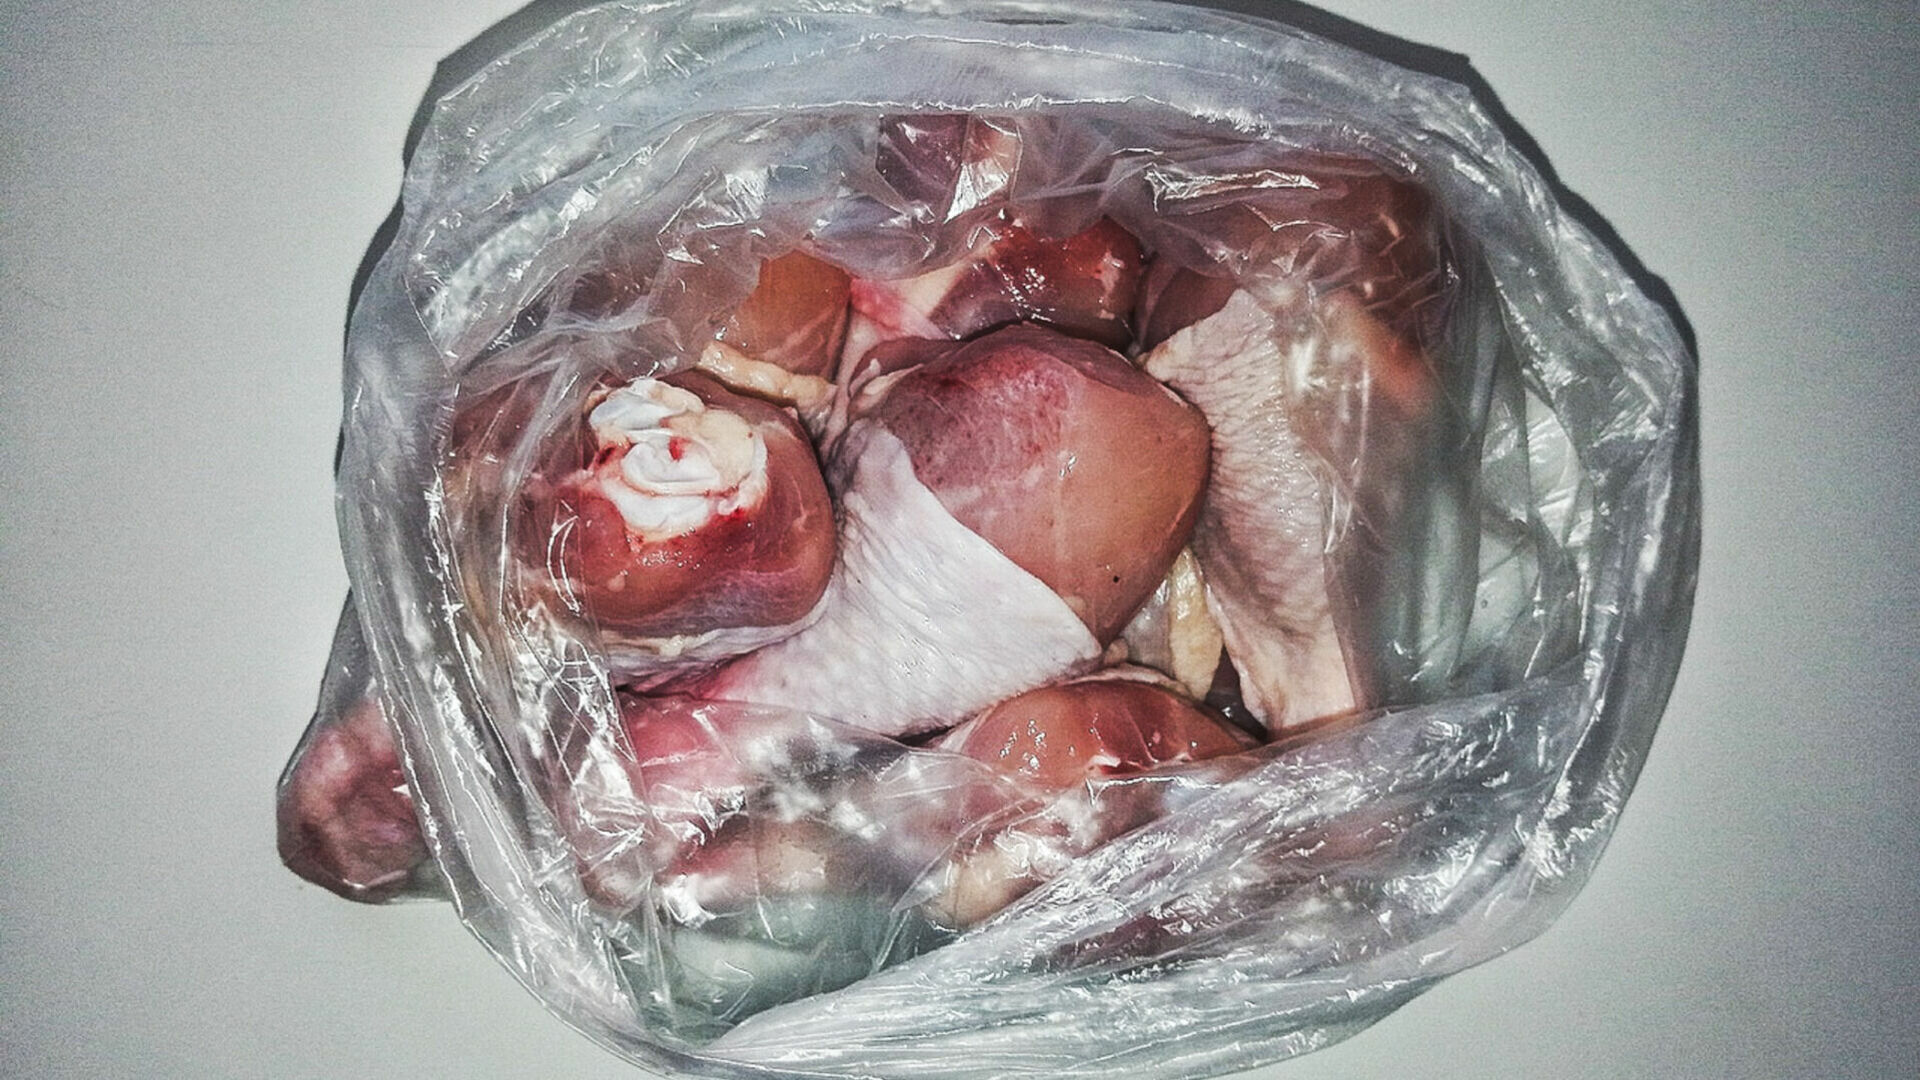 90 кг мяса из 17 кг цыплят изготовил и продал в школу предприниматель в Ижевске